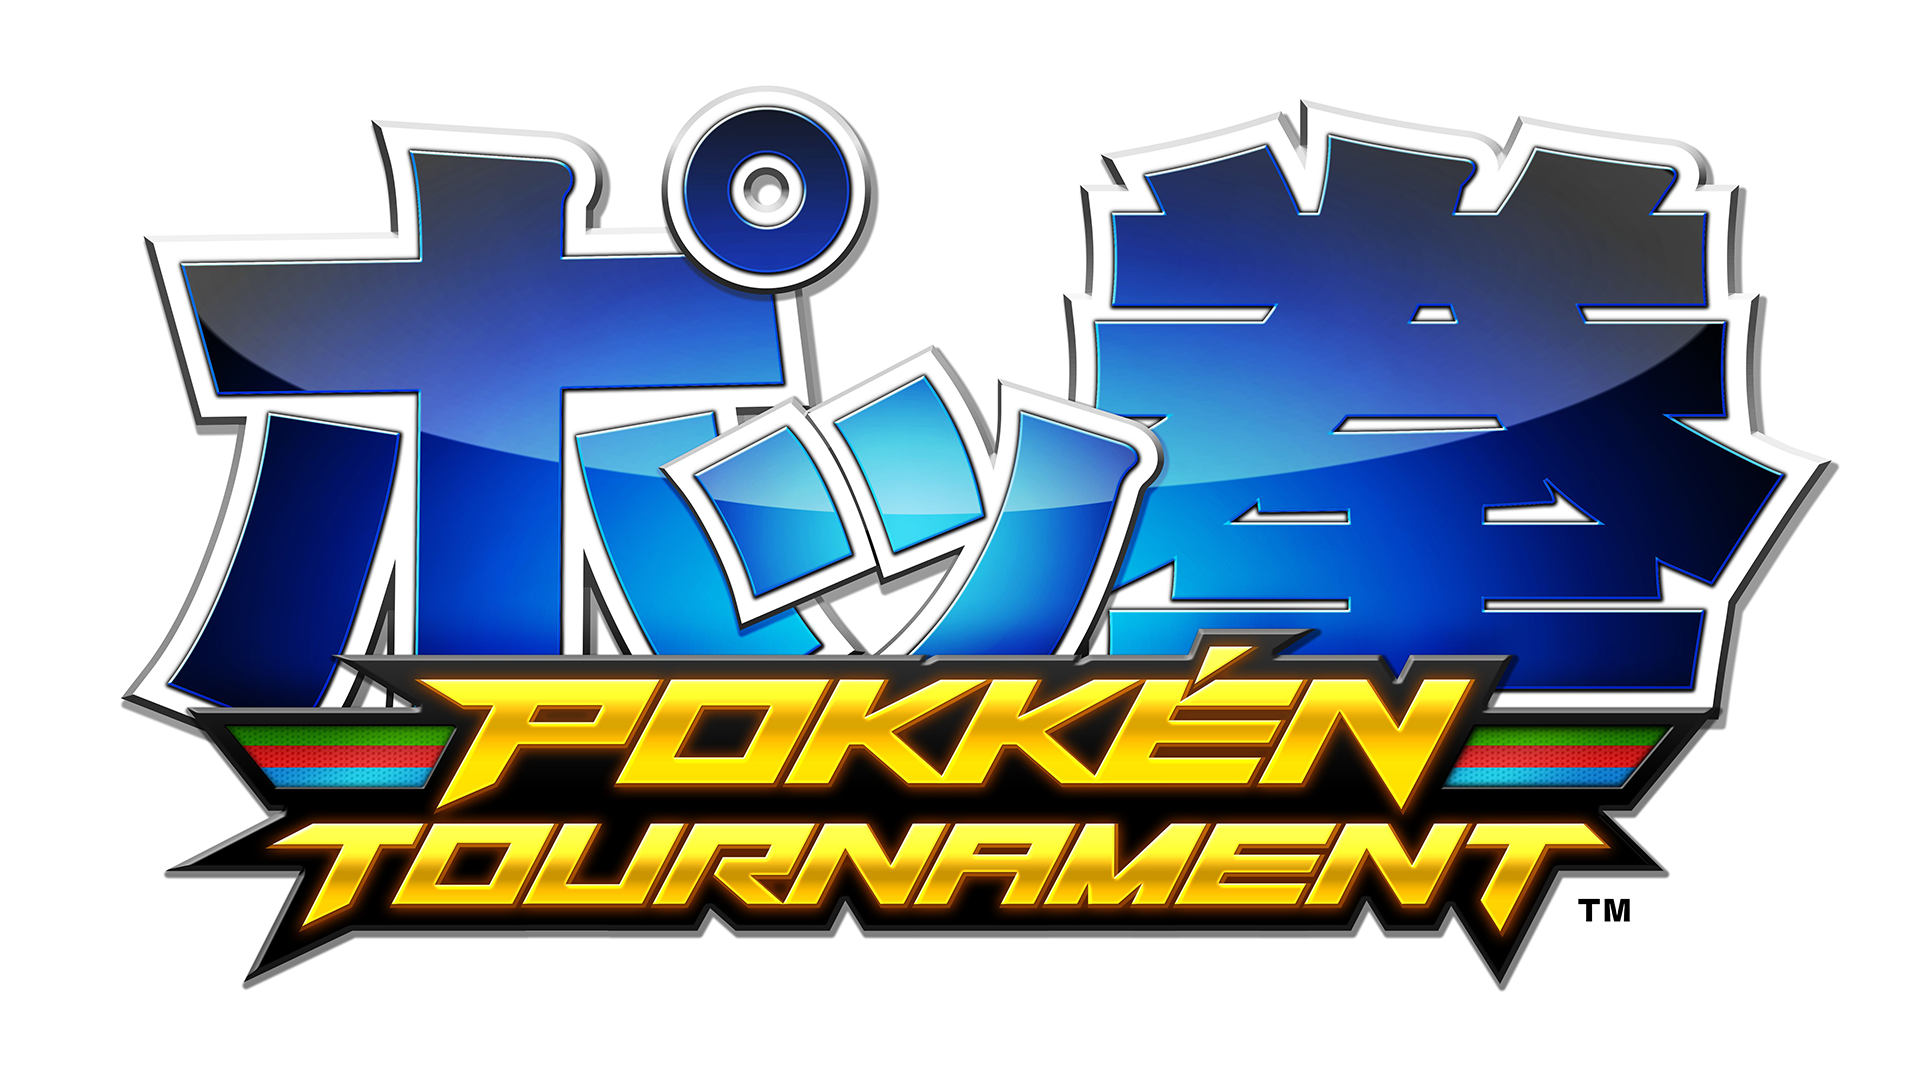 Pokkén Tournament Logo